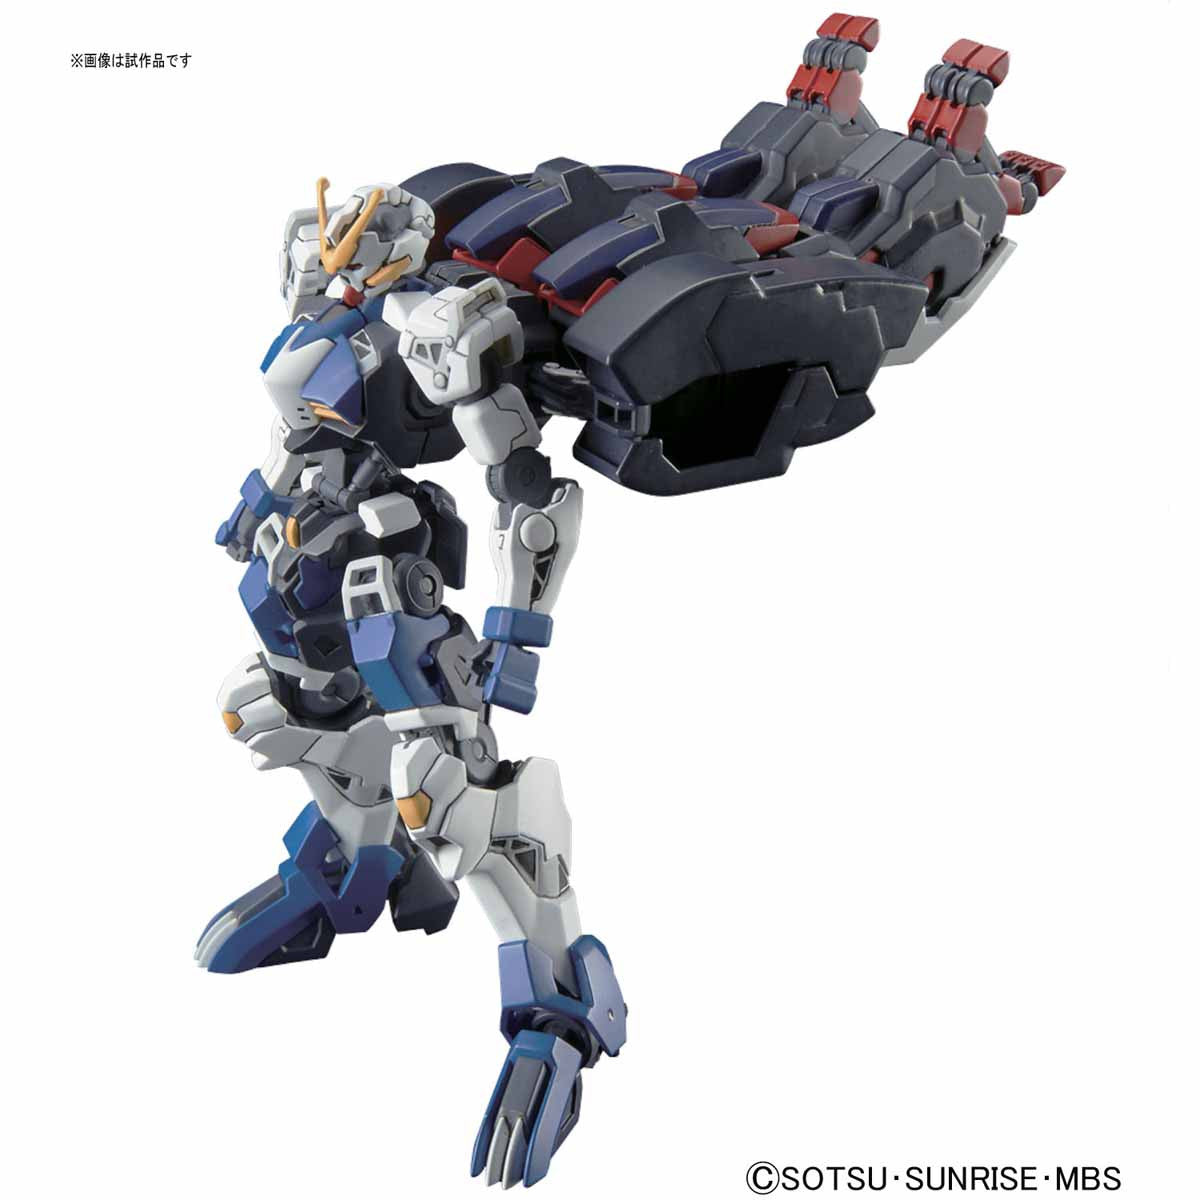 HG 1/144 Gundam Dantalion